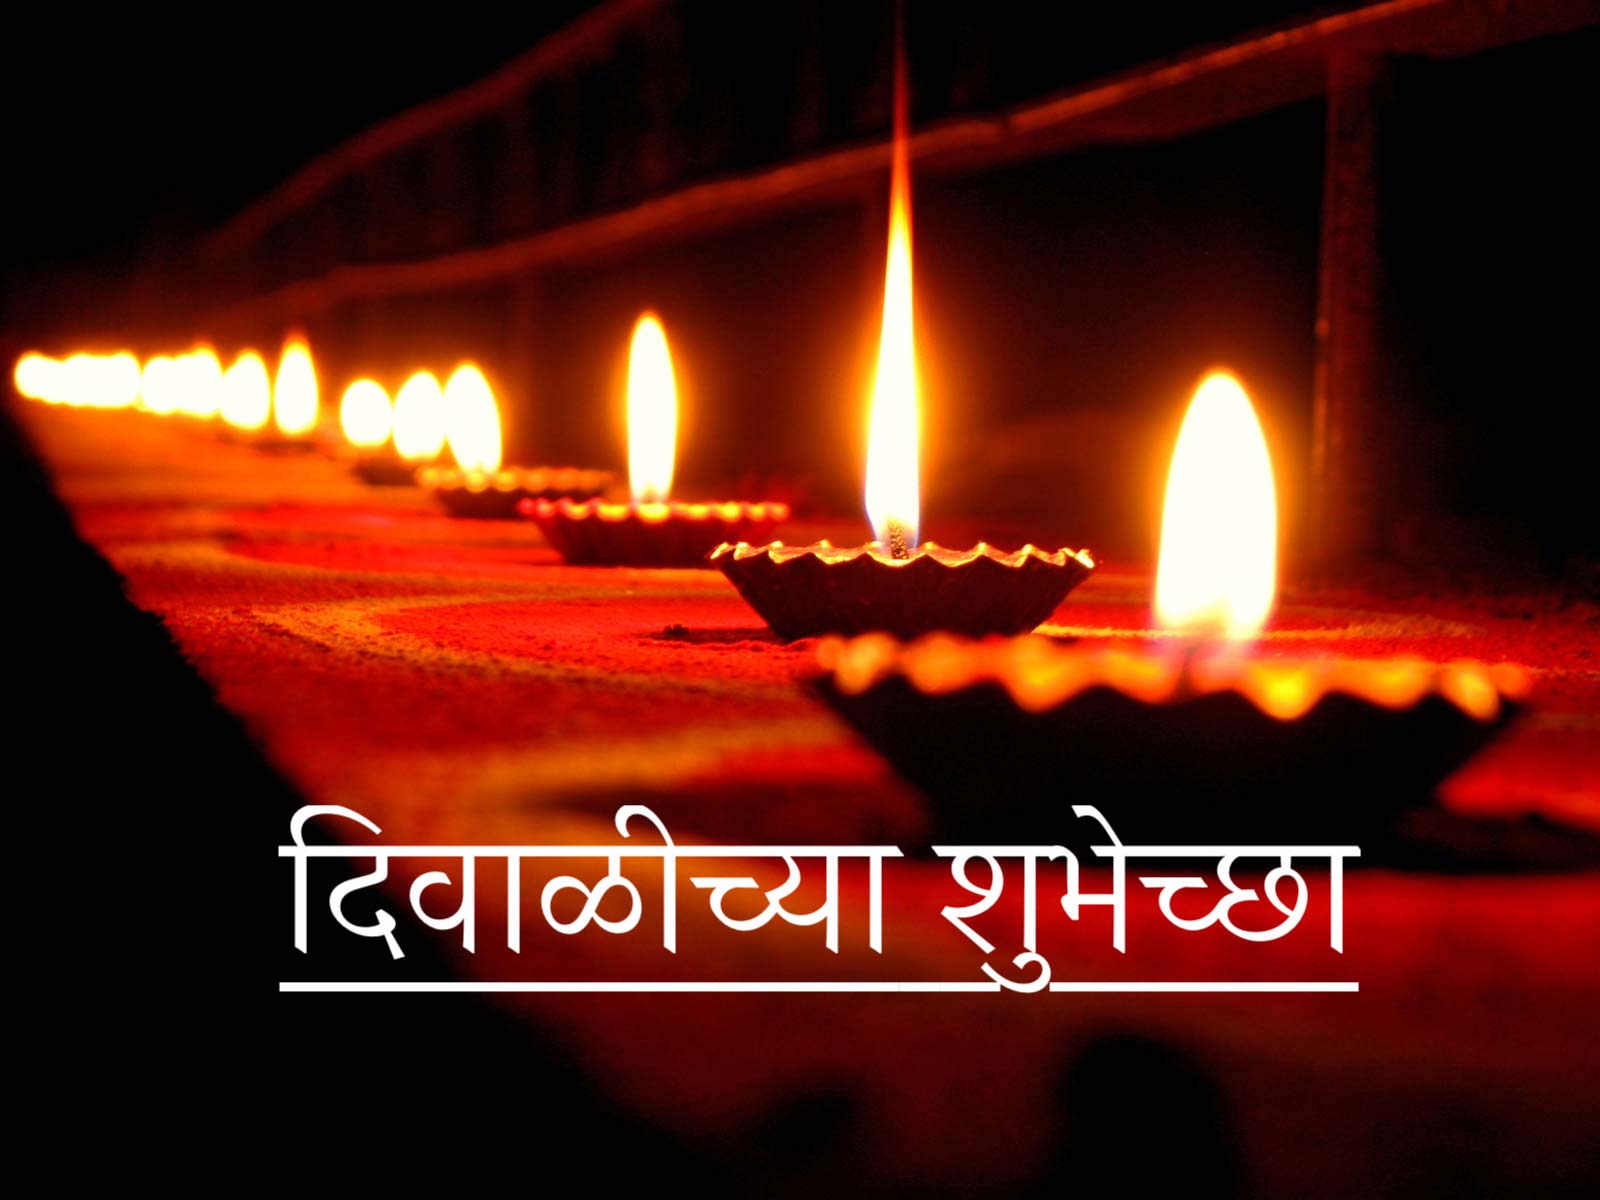 Best Collection of Happy Diwali Shayari Status Quotes in Marathi for Whatsapp DP FB Insta Reels Twitter Reddit | हैप्पी दिवाली (दिवाळीच्या शुभेच्छा) शायरी स्टेटस कोट्स मराठी में